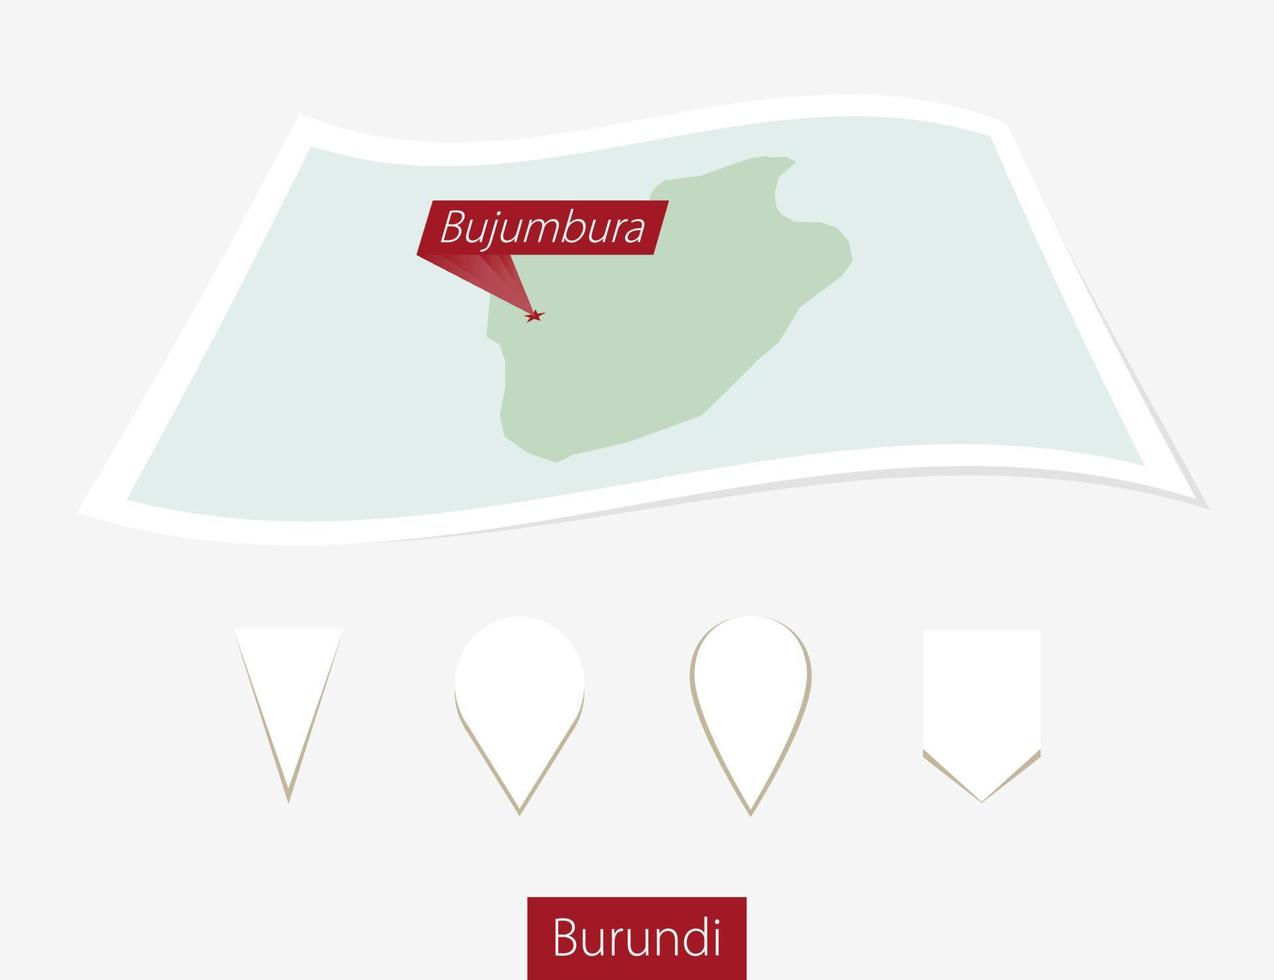 gebogen Papier Karte von Burundi mit Hauptstadt bujumbura auf grau Hintergrund. vier anders Karte Stift Satz. vektor